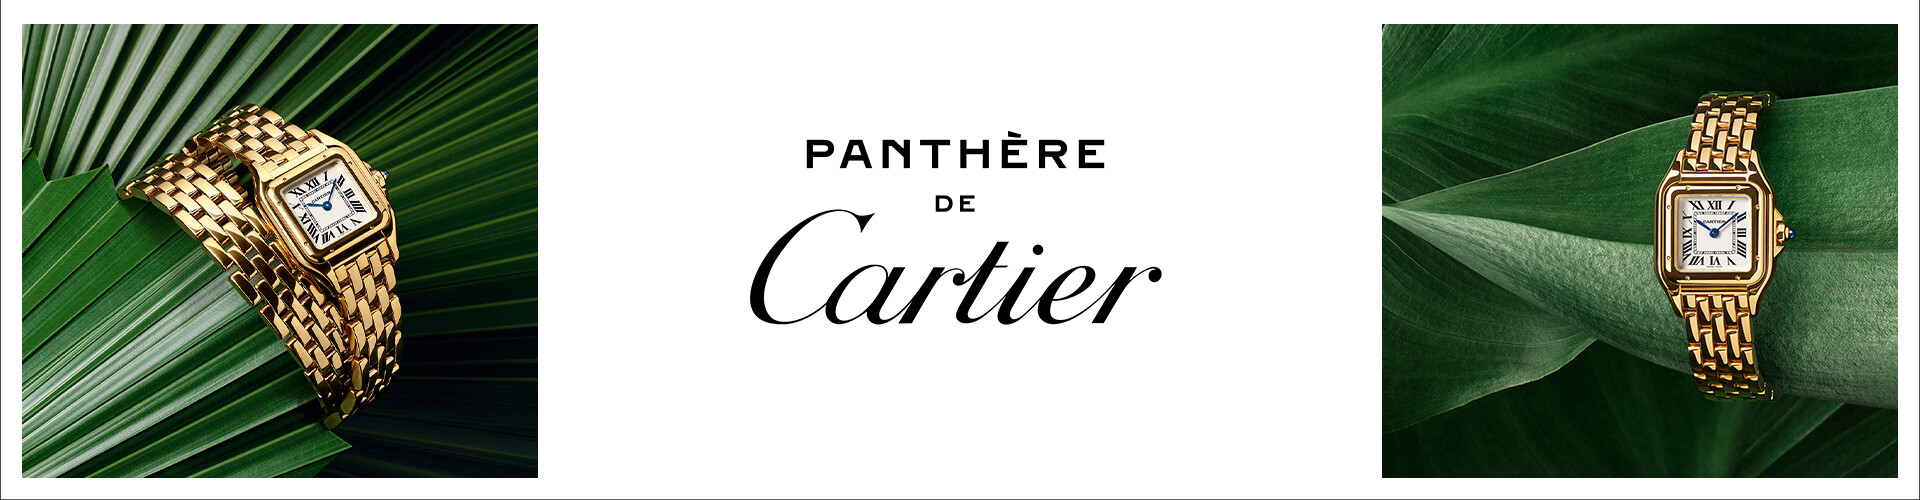 Cartier_ Phantere